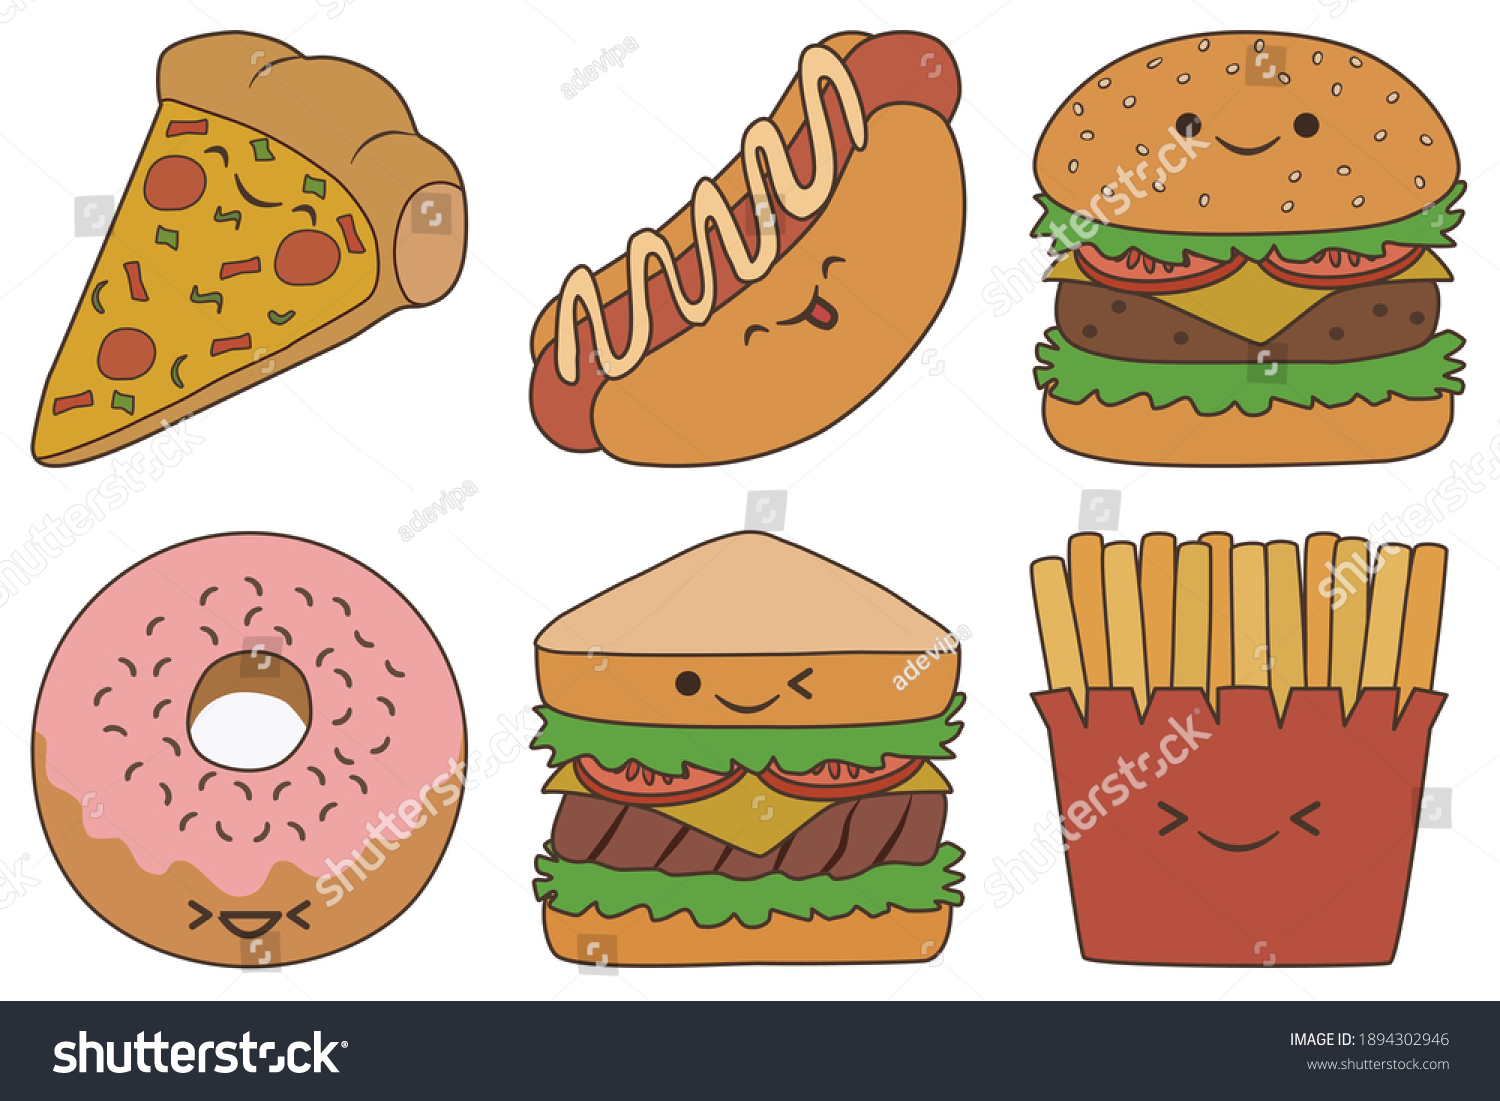 89,327 Potato sandwich Images, Stock Photos & Vectors | Shutterstock